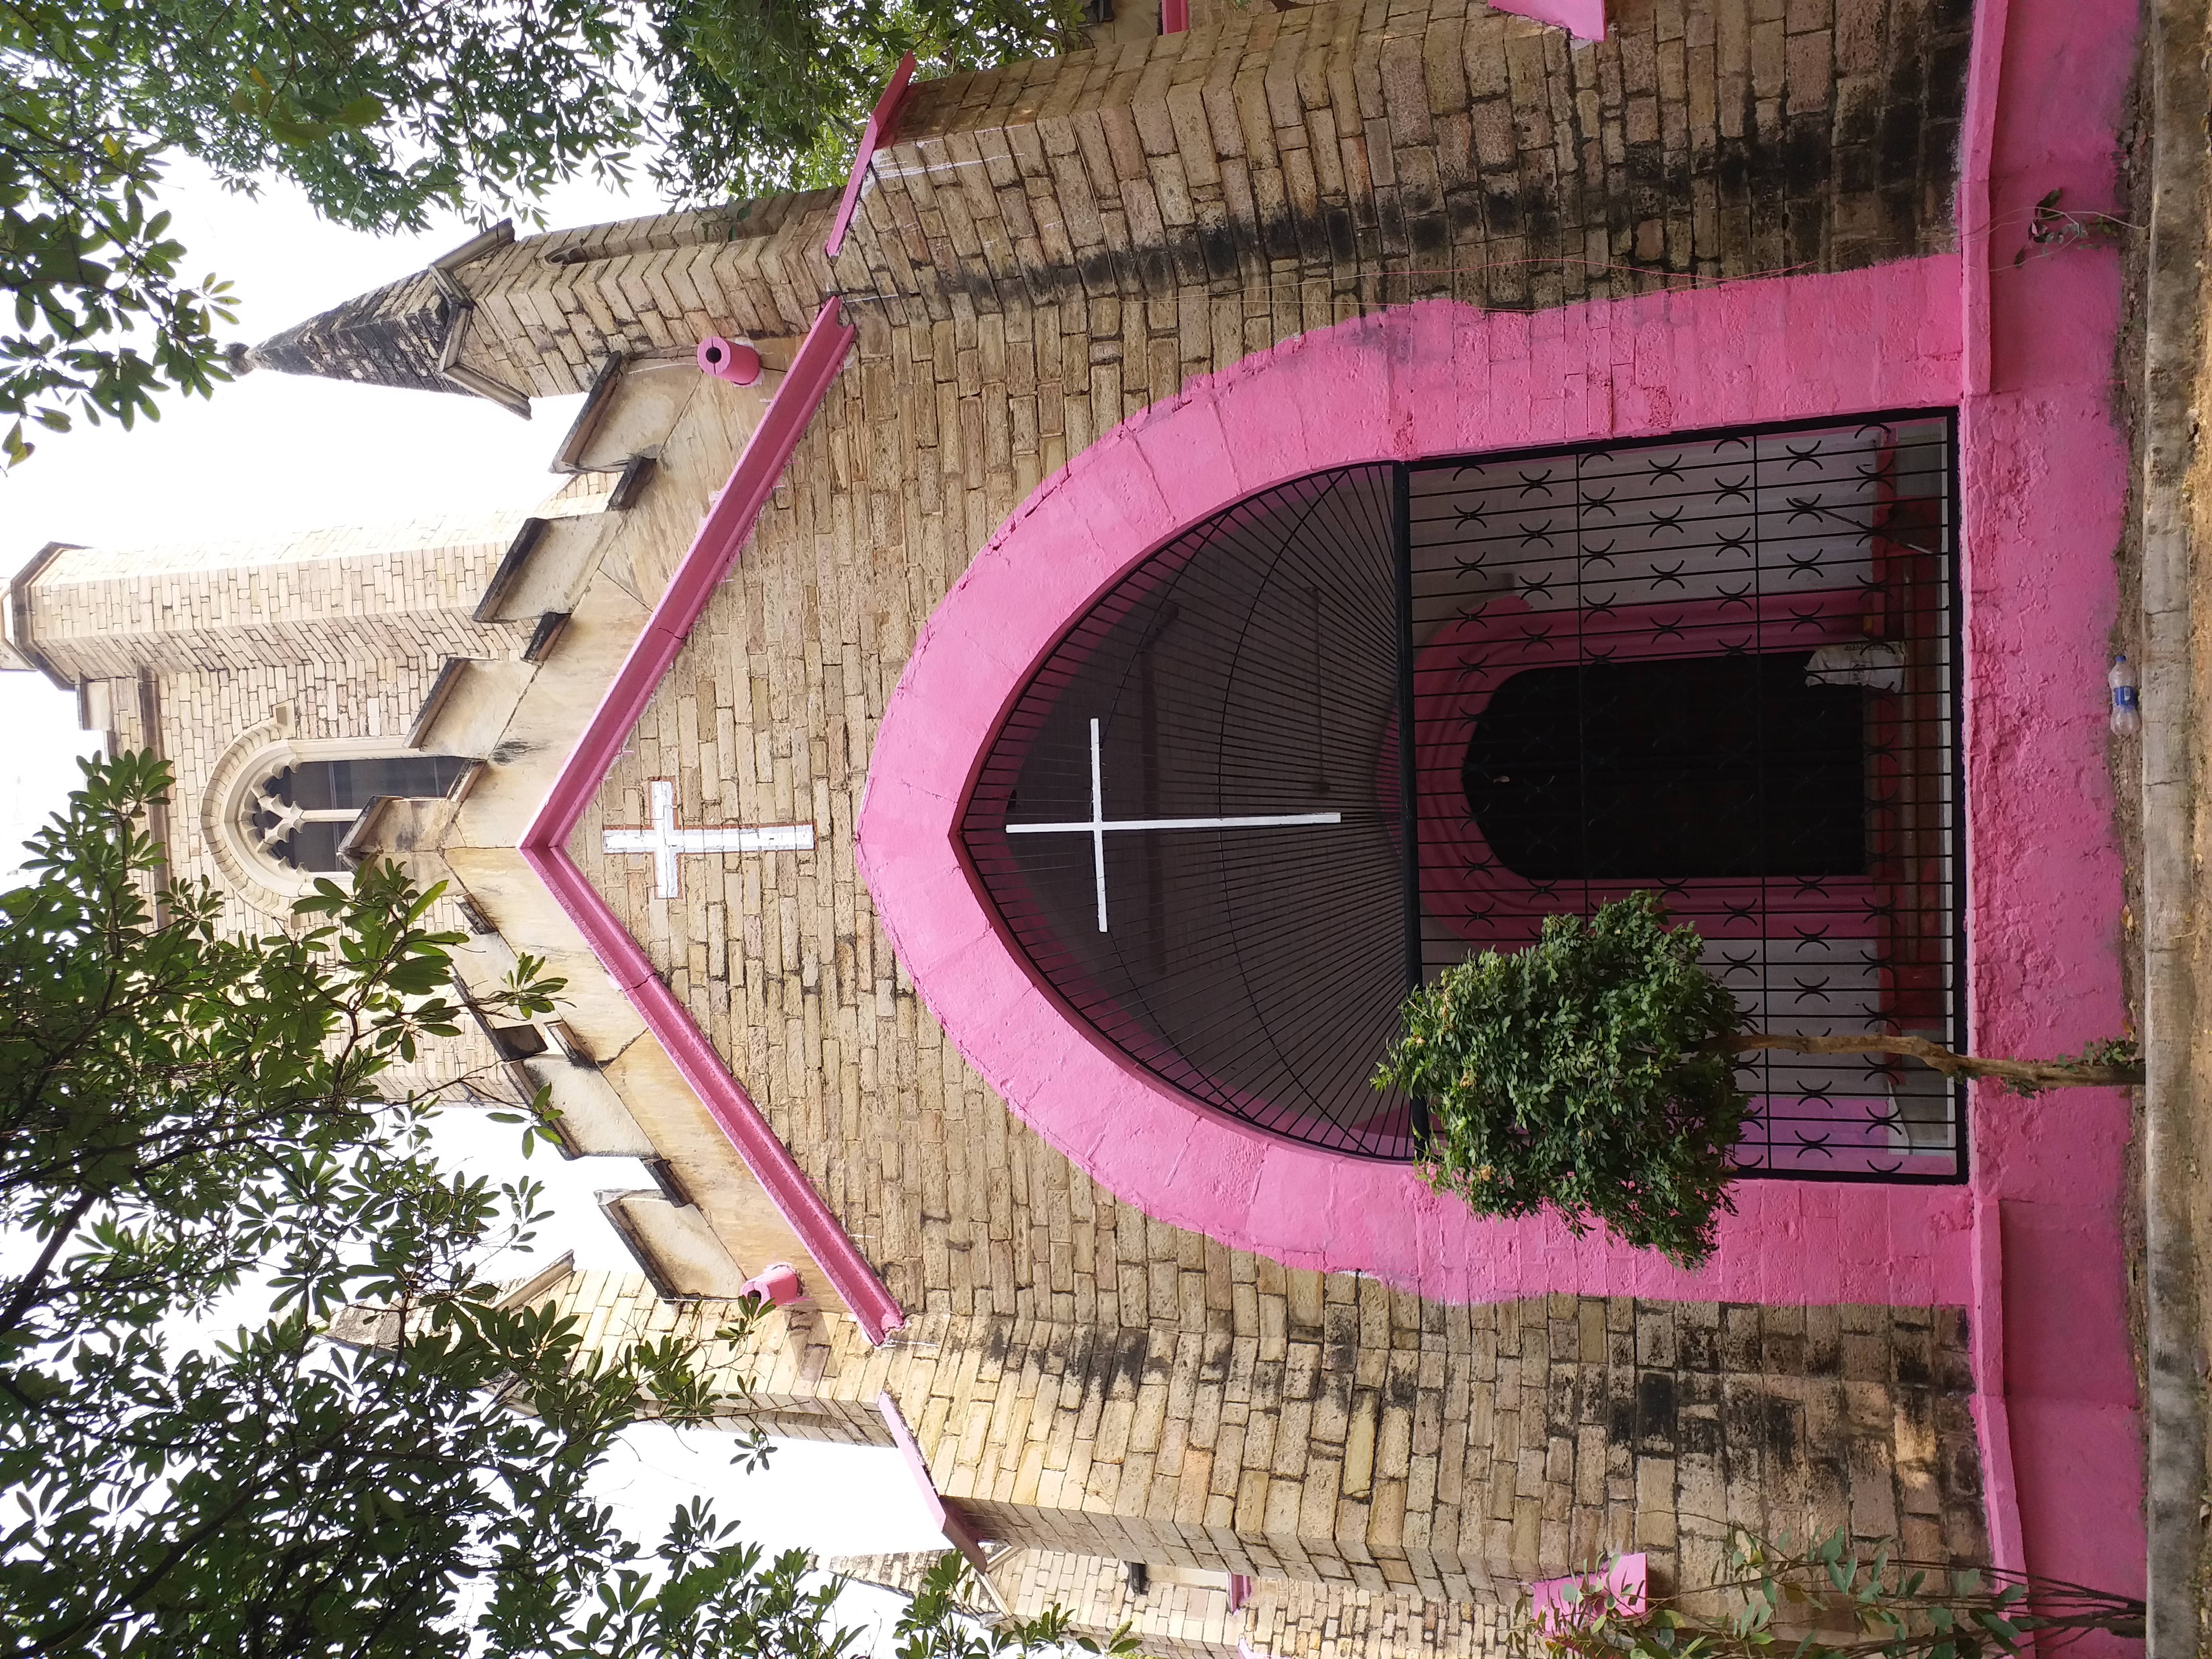 Gwalior historic 245 year old Christ Church